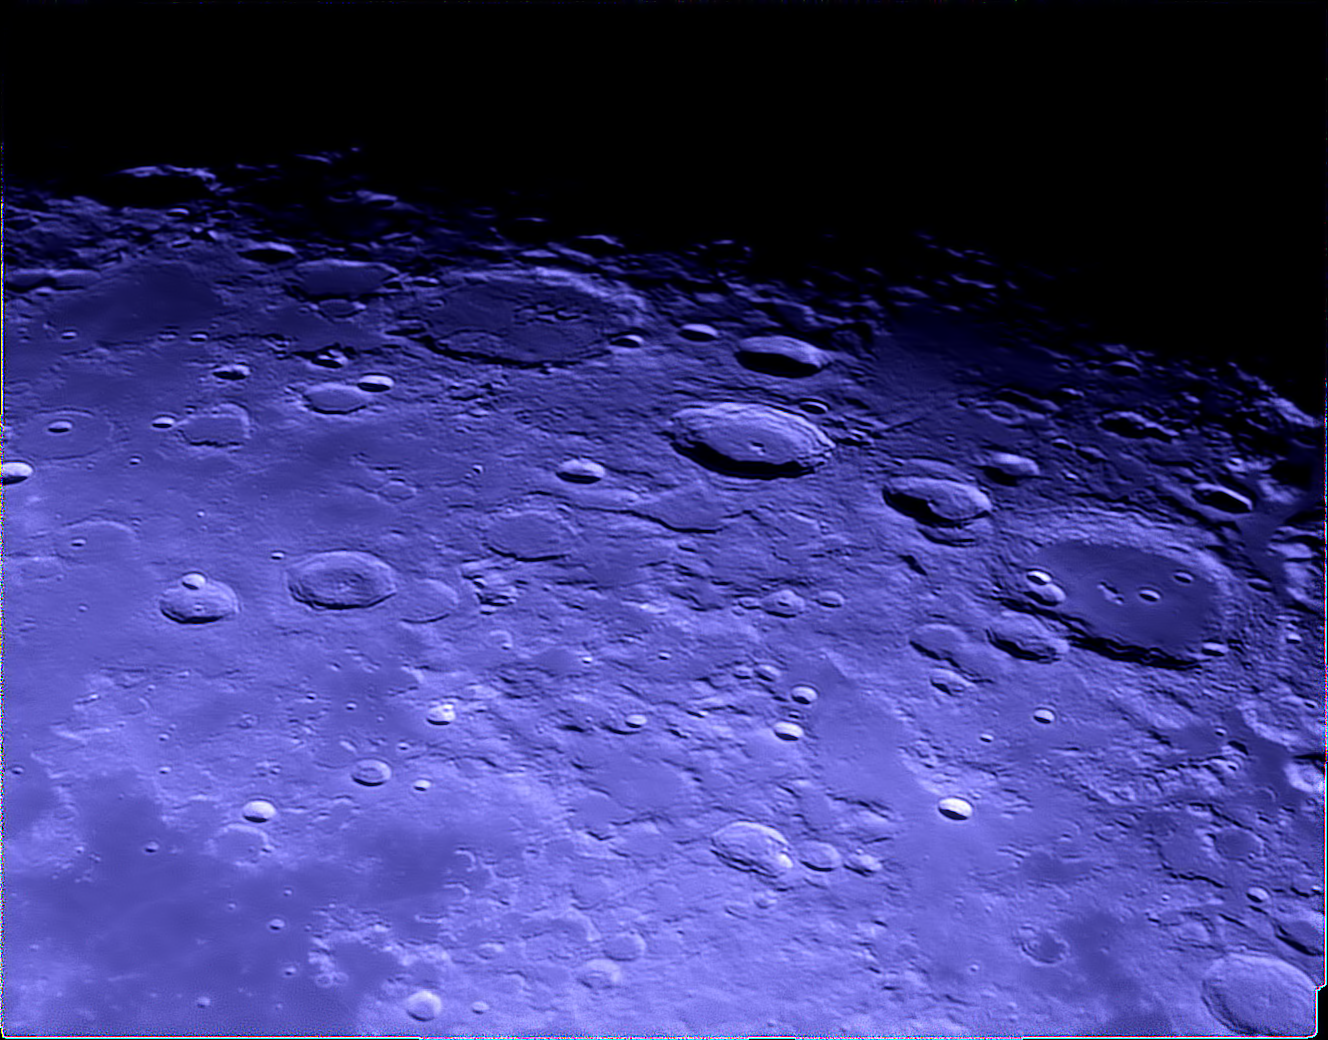 25-11-2018 Craters Cleomedes - Burckhardt - Geminus